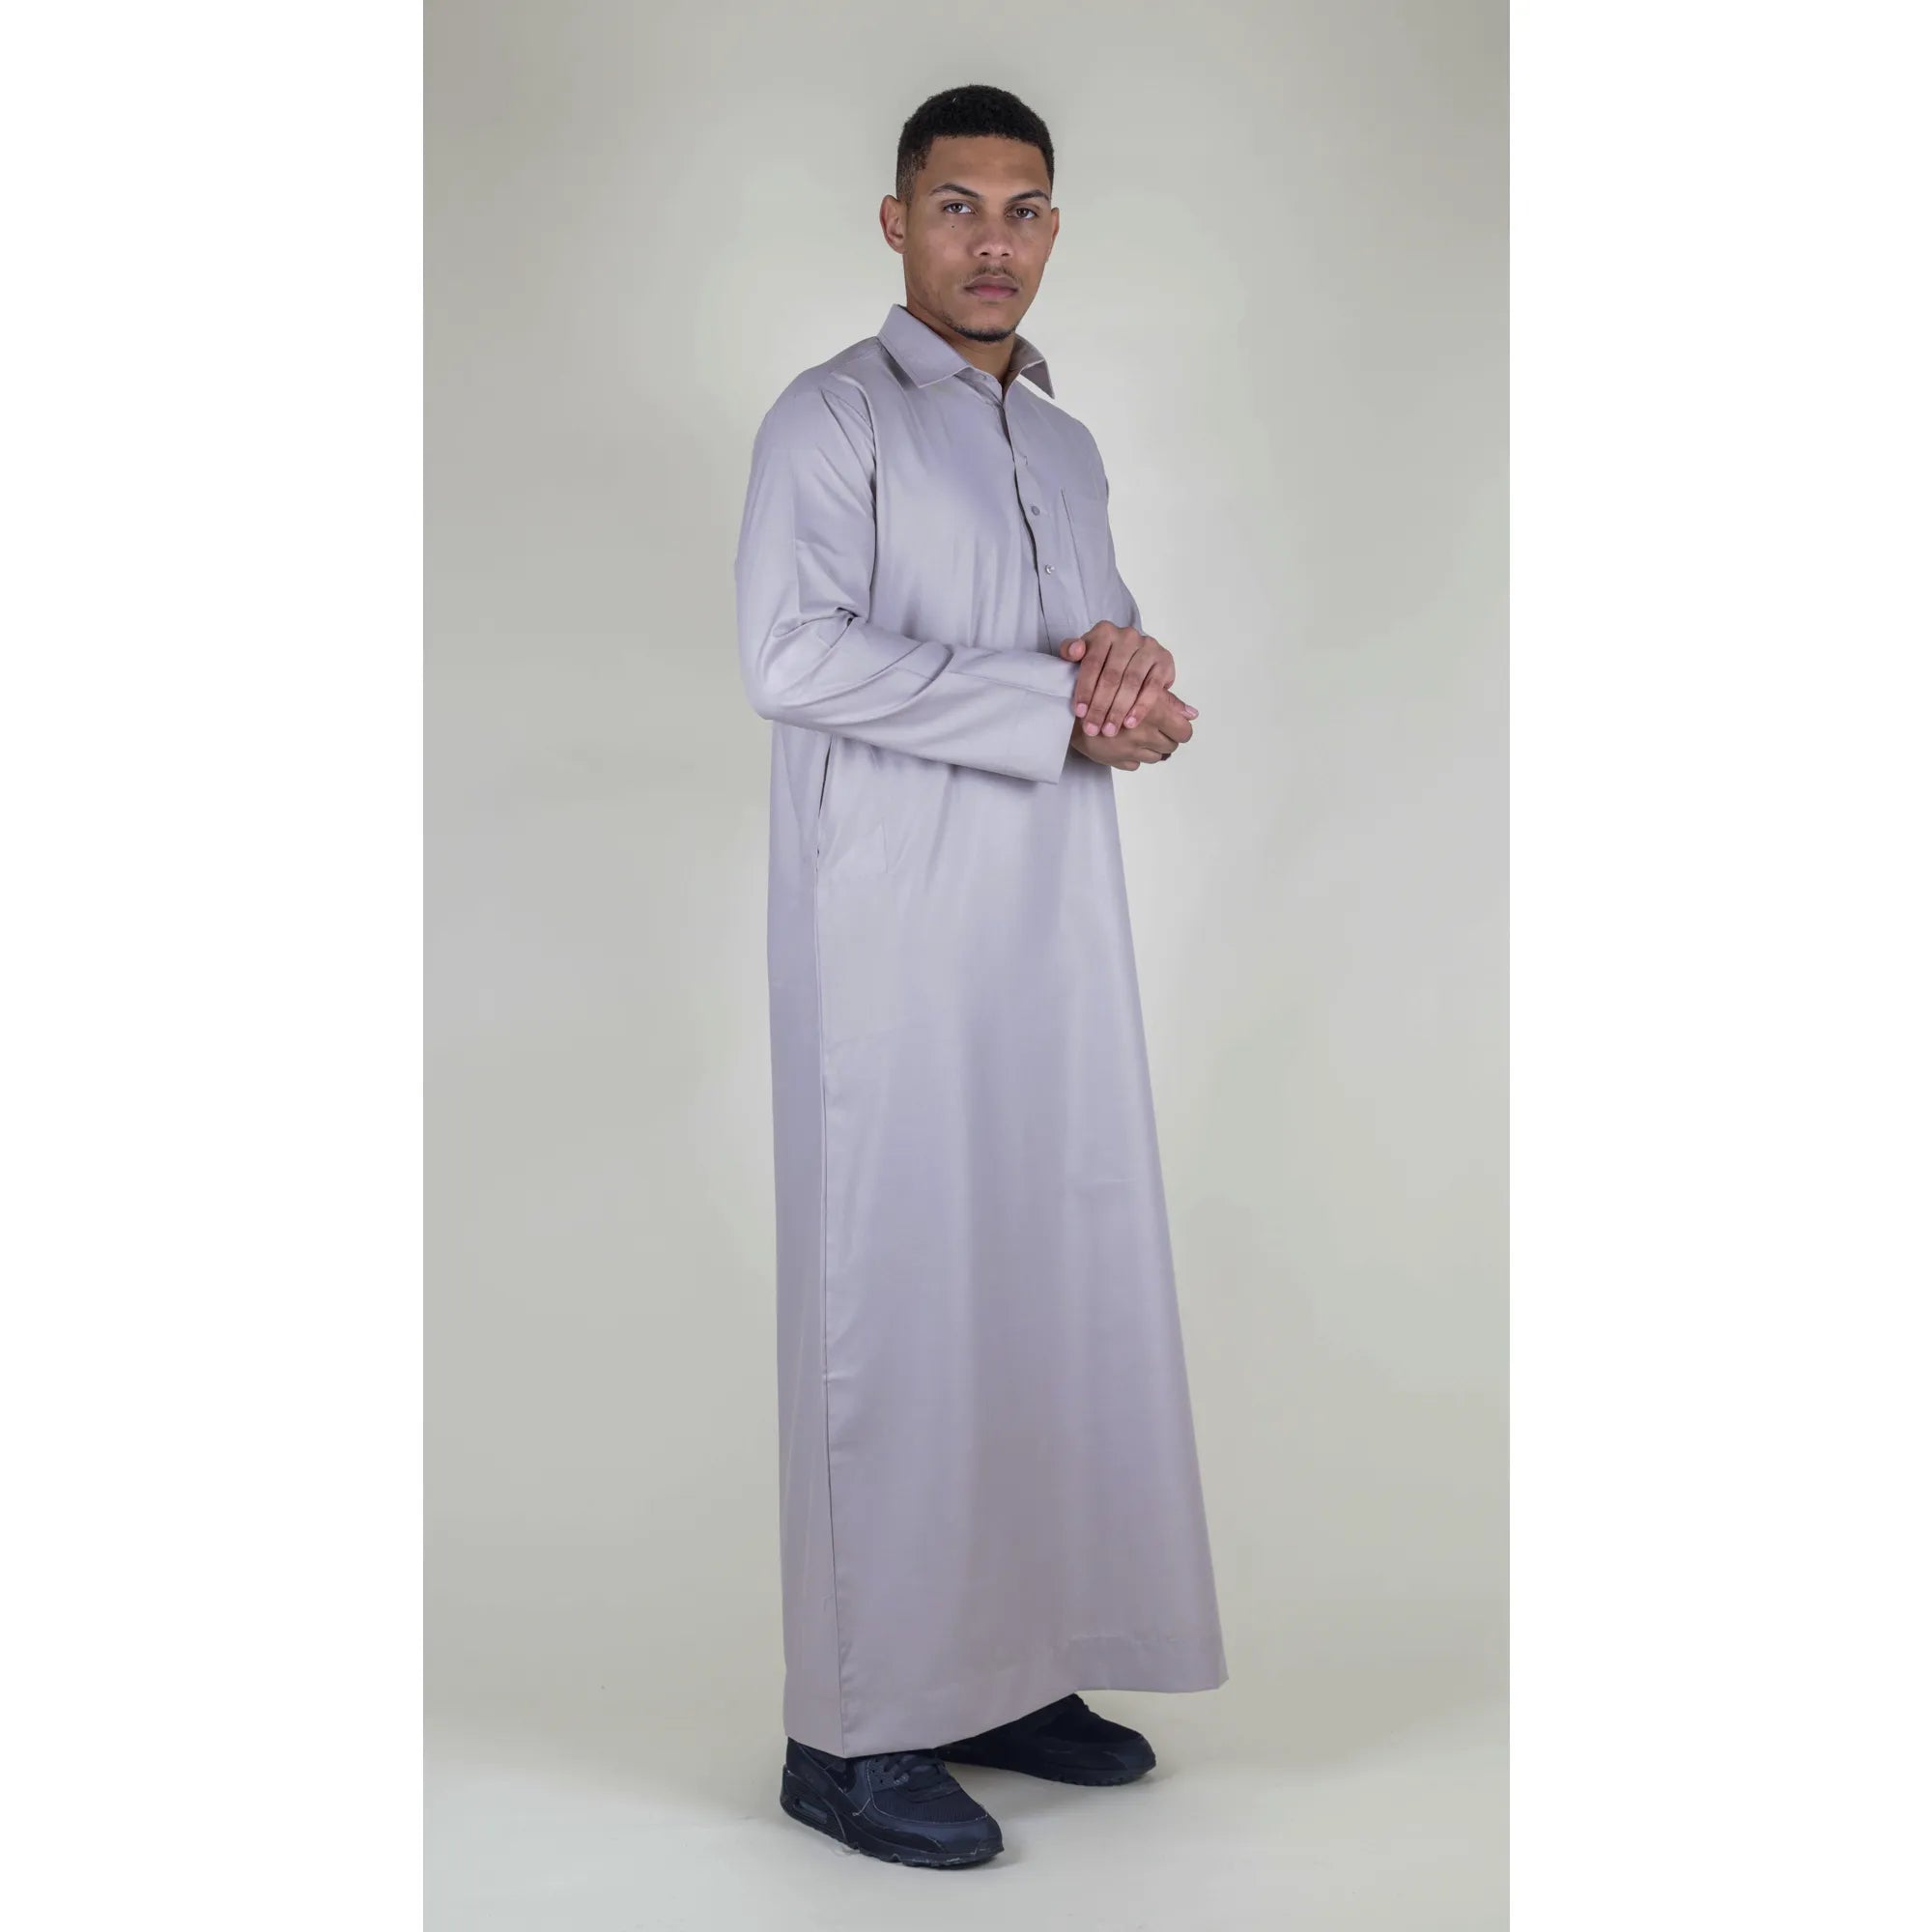 Vestimenta musulmana y arabe Jubba de algodón con cuello para hombre